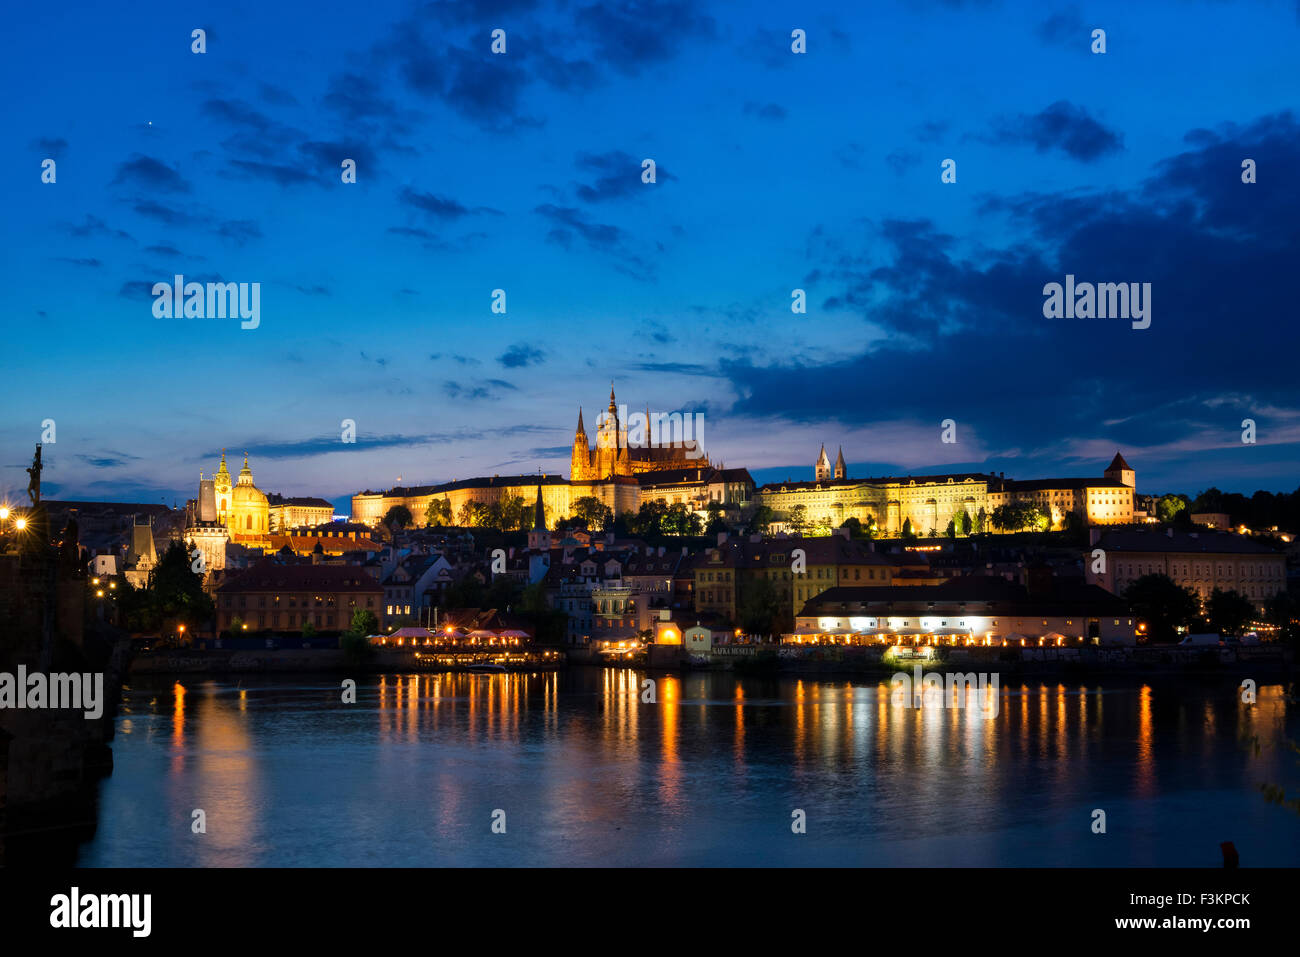 La catedral de San Vito y el Castillo de Praga desde el casco antiguo, el anochecer Foto de stock